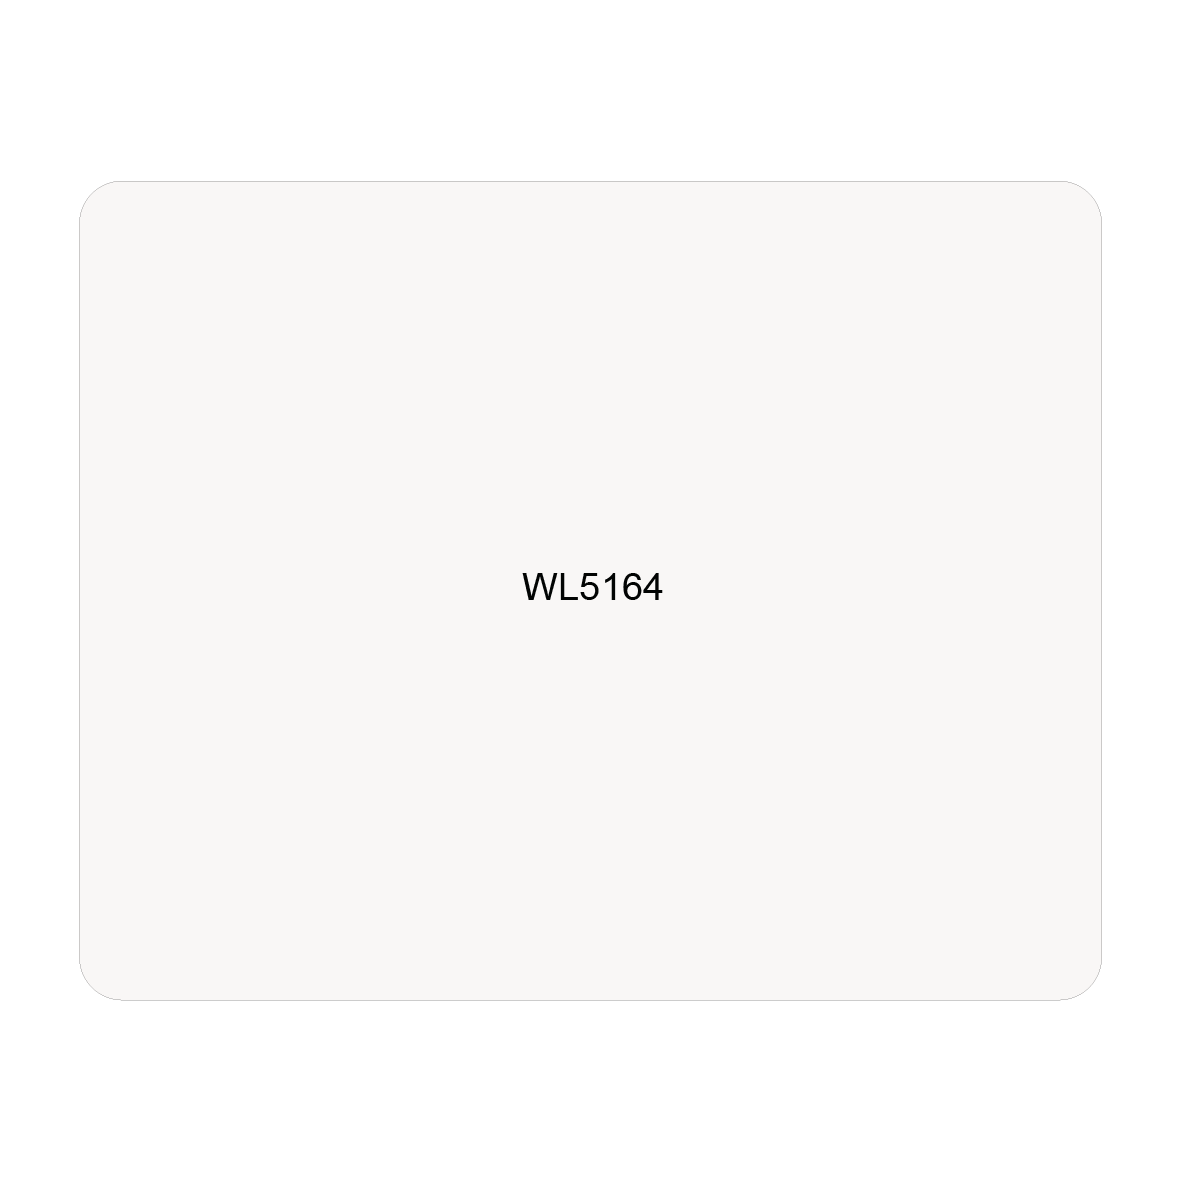 WL5164 - ASTAR SELF-ADHESIVE LABEL